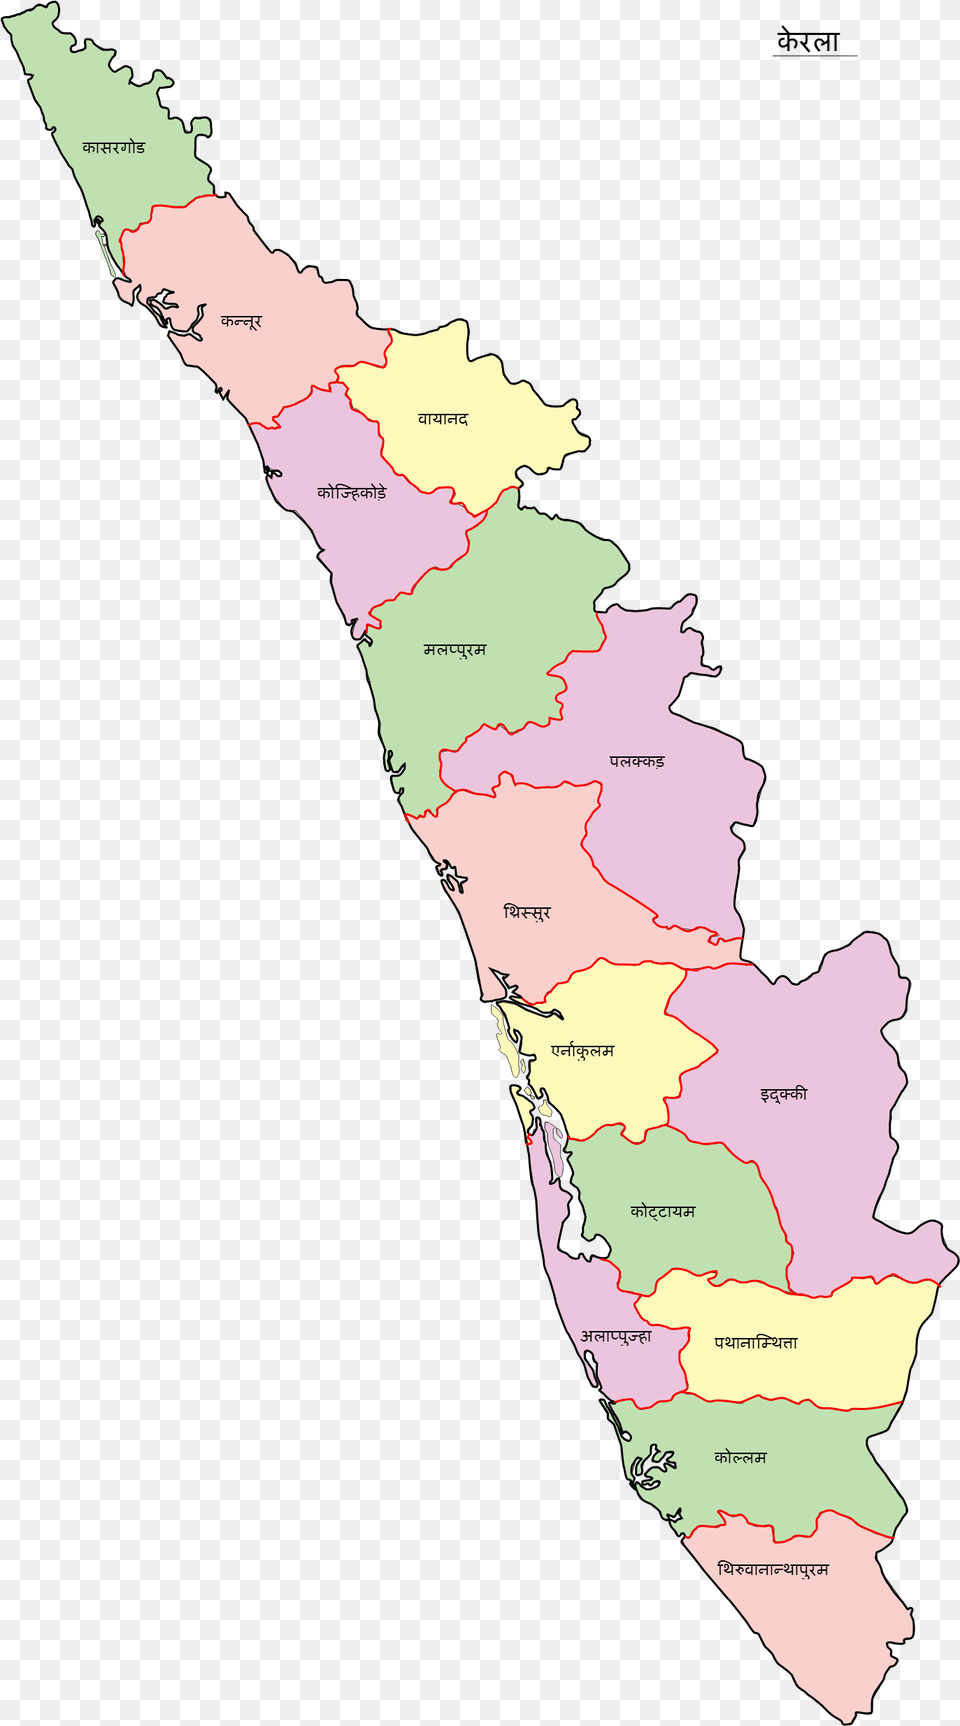 Kerala Map Hi Kerala Map In English, Chart, Plot, Atlas, Diagram Free Png Download